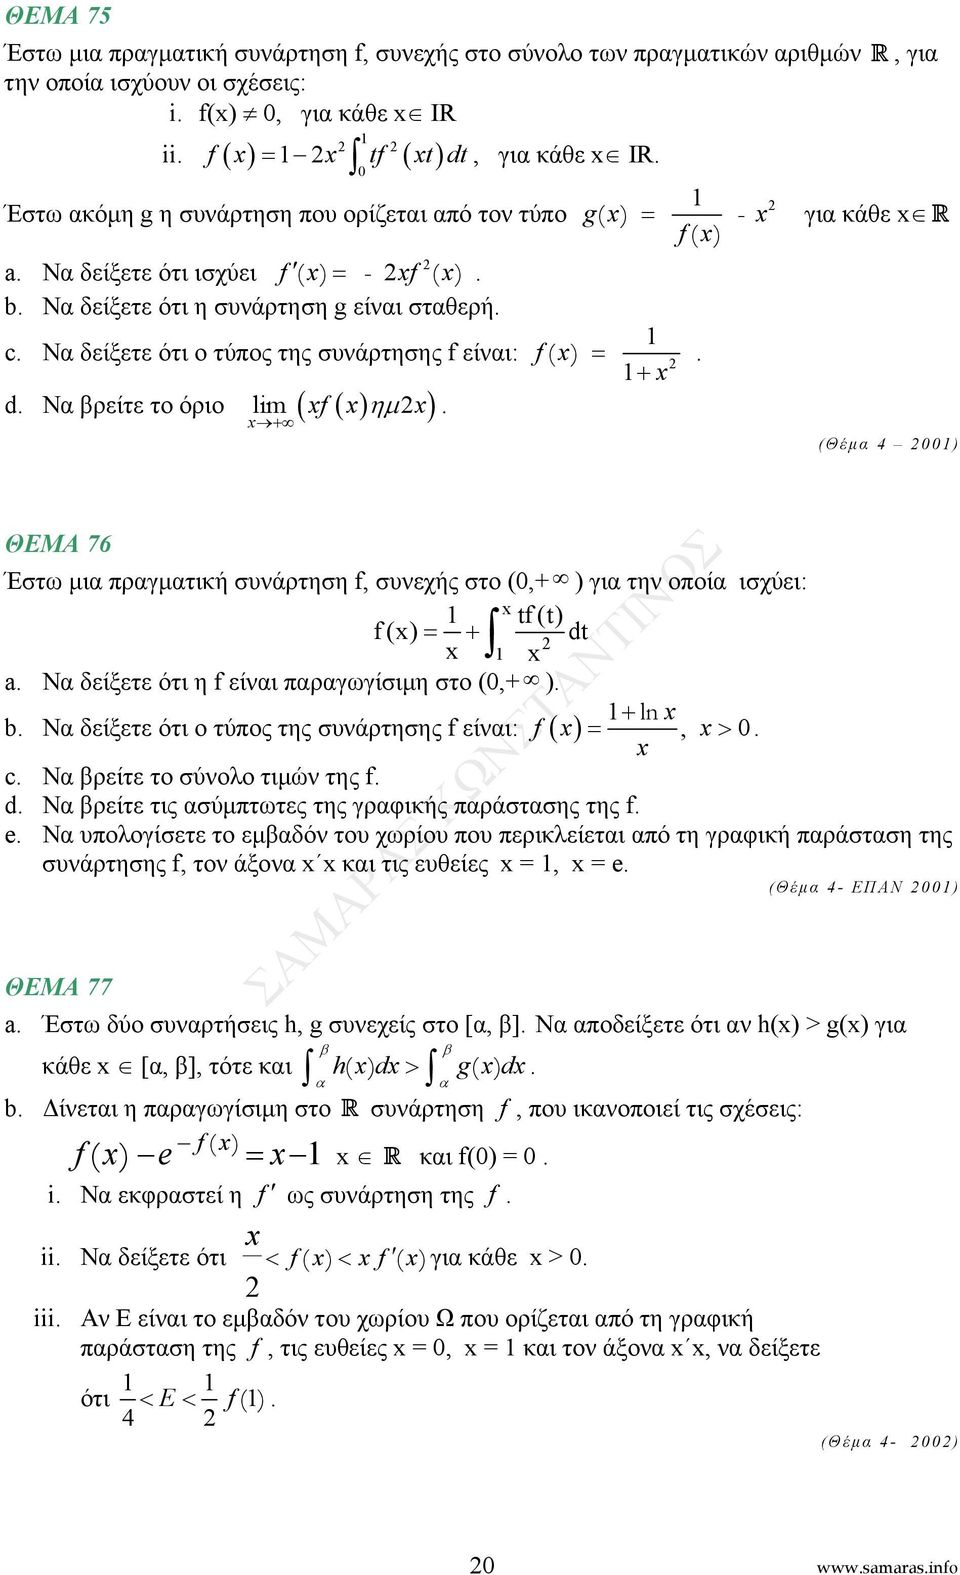 76 Έστω μι πργμτική συνάρτηση f, συνεχής στο (,+ ) γι την οποί ισχύει: tf(t) f() = + dt a Ν δείξετε ότι η f είνι πργωγίσιμη στο (,+ ) + ln b Ν δείξετε ότι ο τύπος της συνάρτησης f είνι: f =, > c Ν